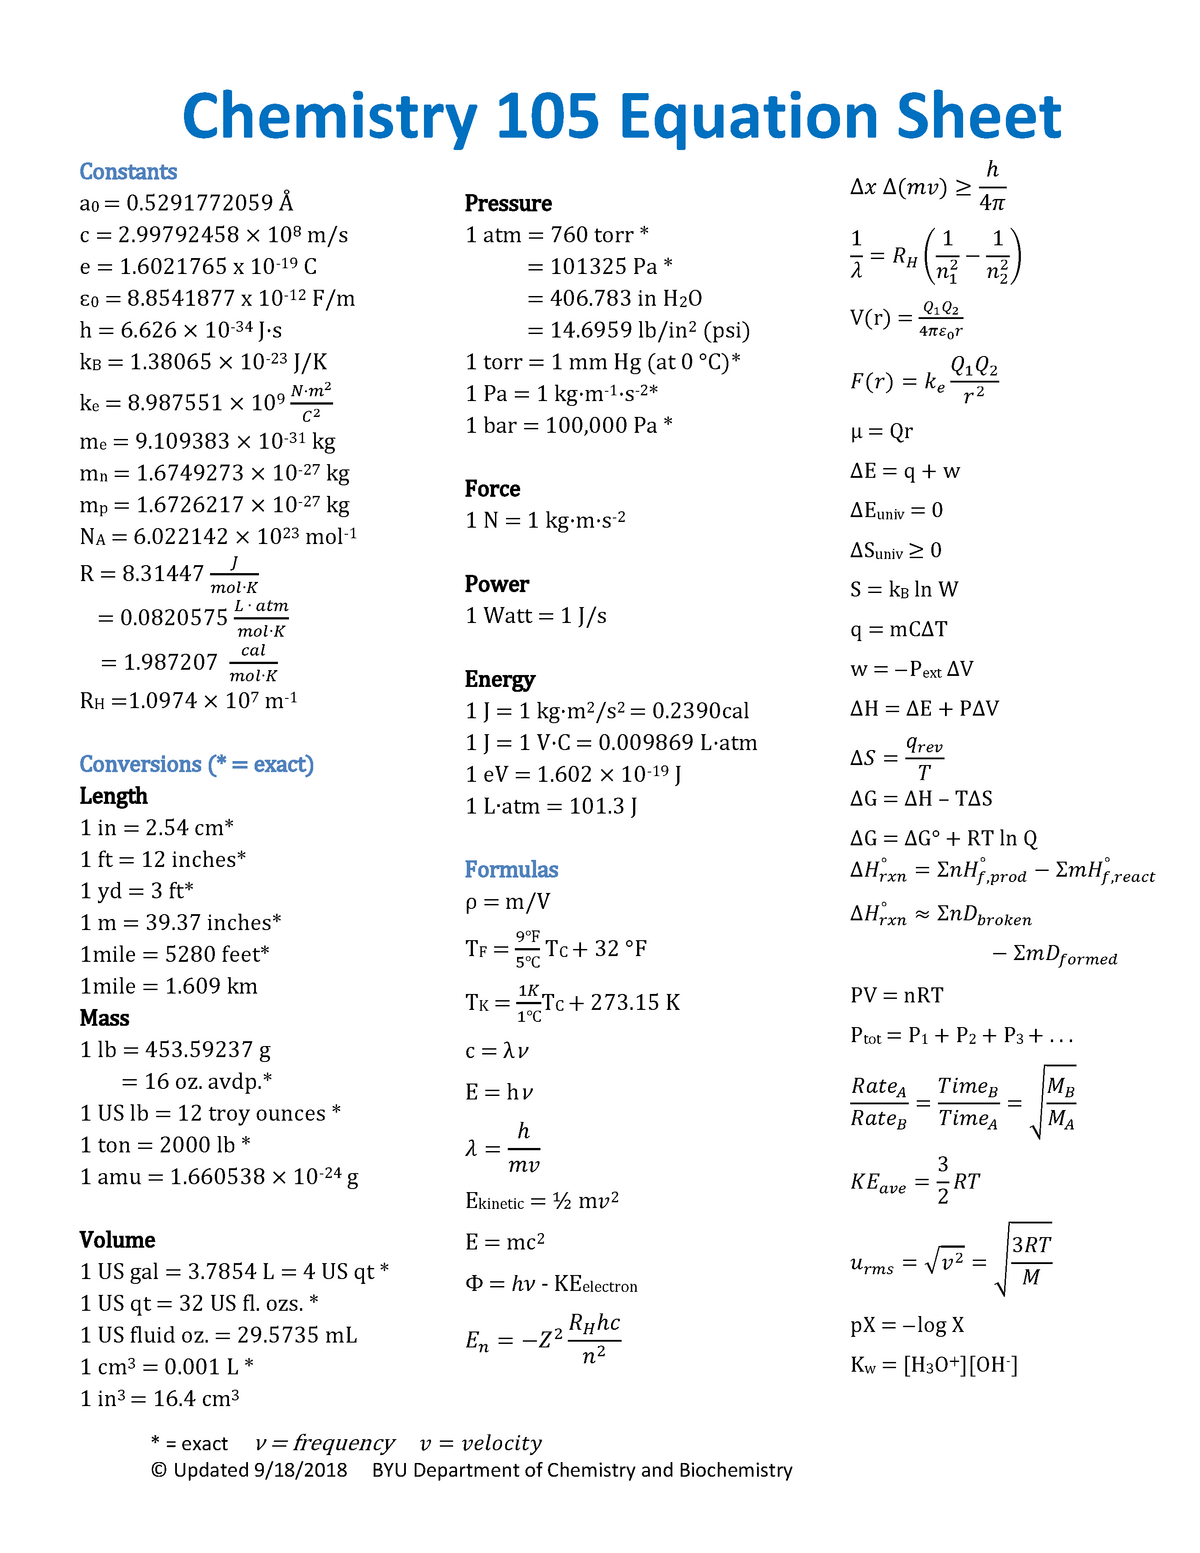 chem-105-106-equation-sheet-fall-2018-warning-tt-undefined-function